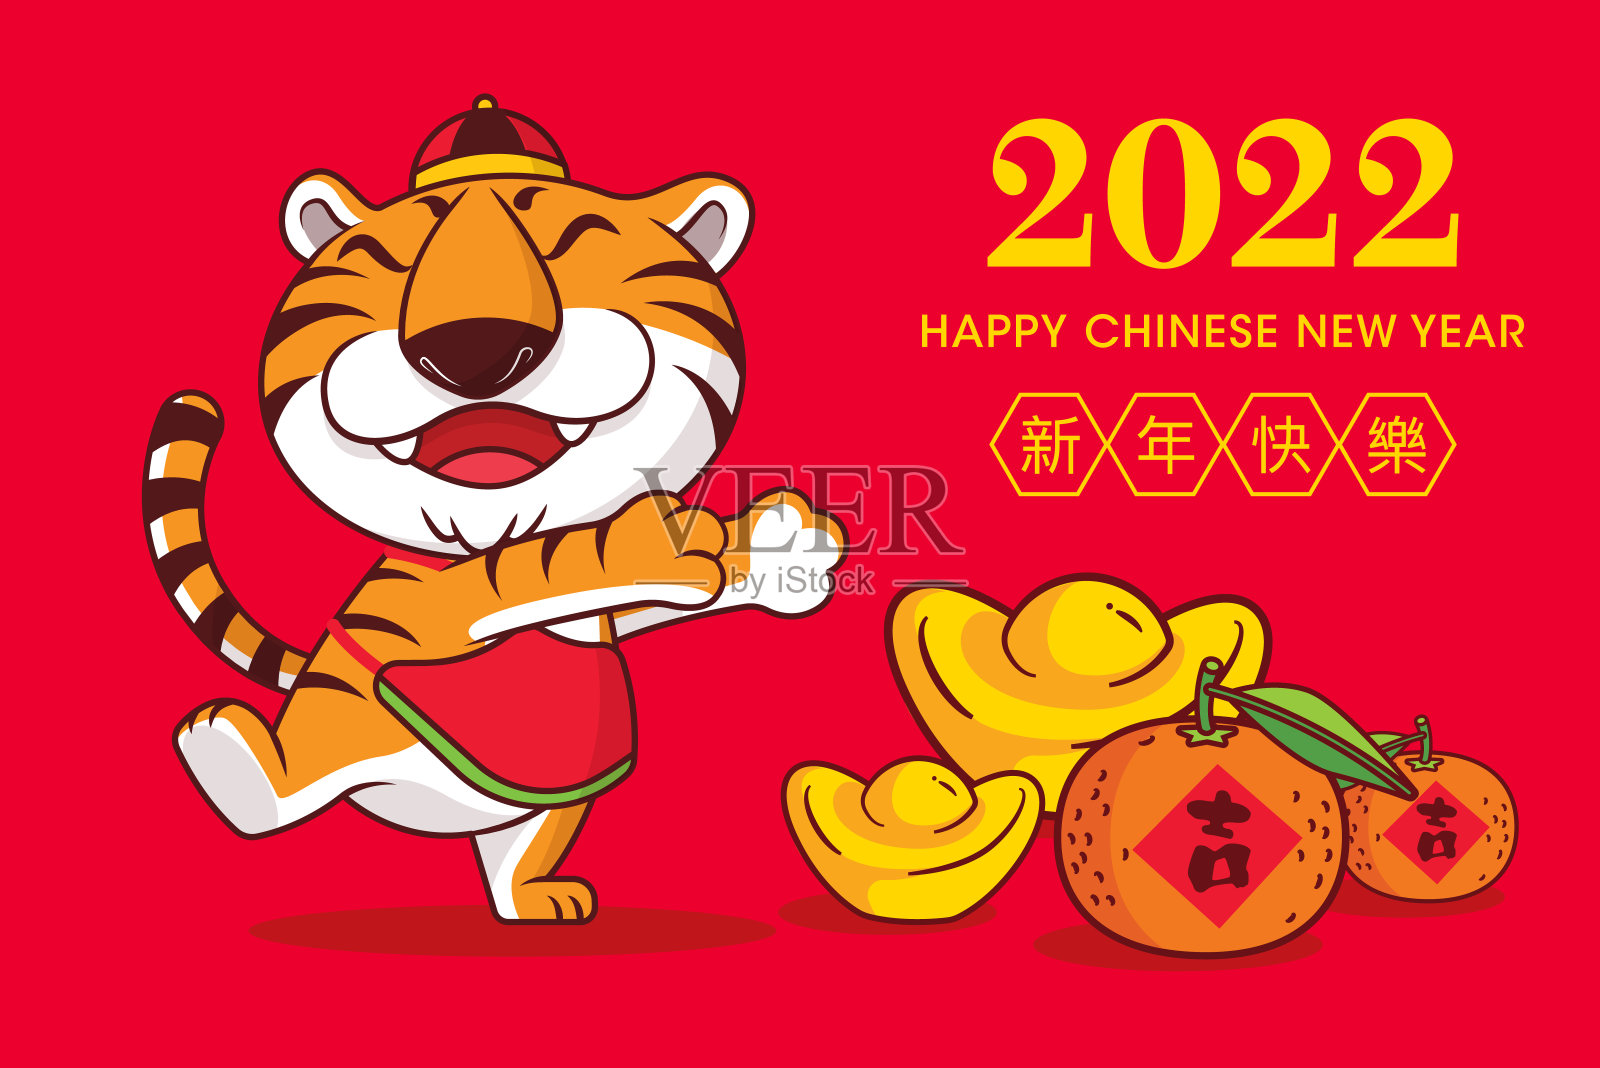 2022年春节快乐贺卡，地板上有卡通可爱的老虎元宝和橘子，上面有2022年春节的祝福。设计模板素材